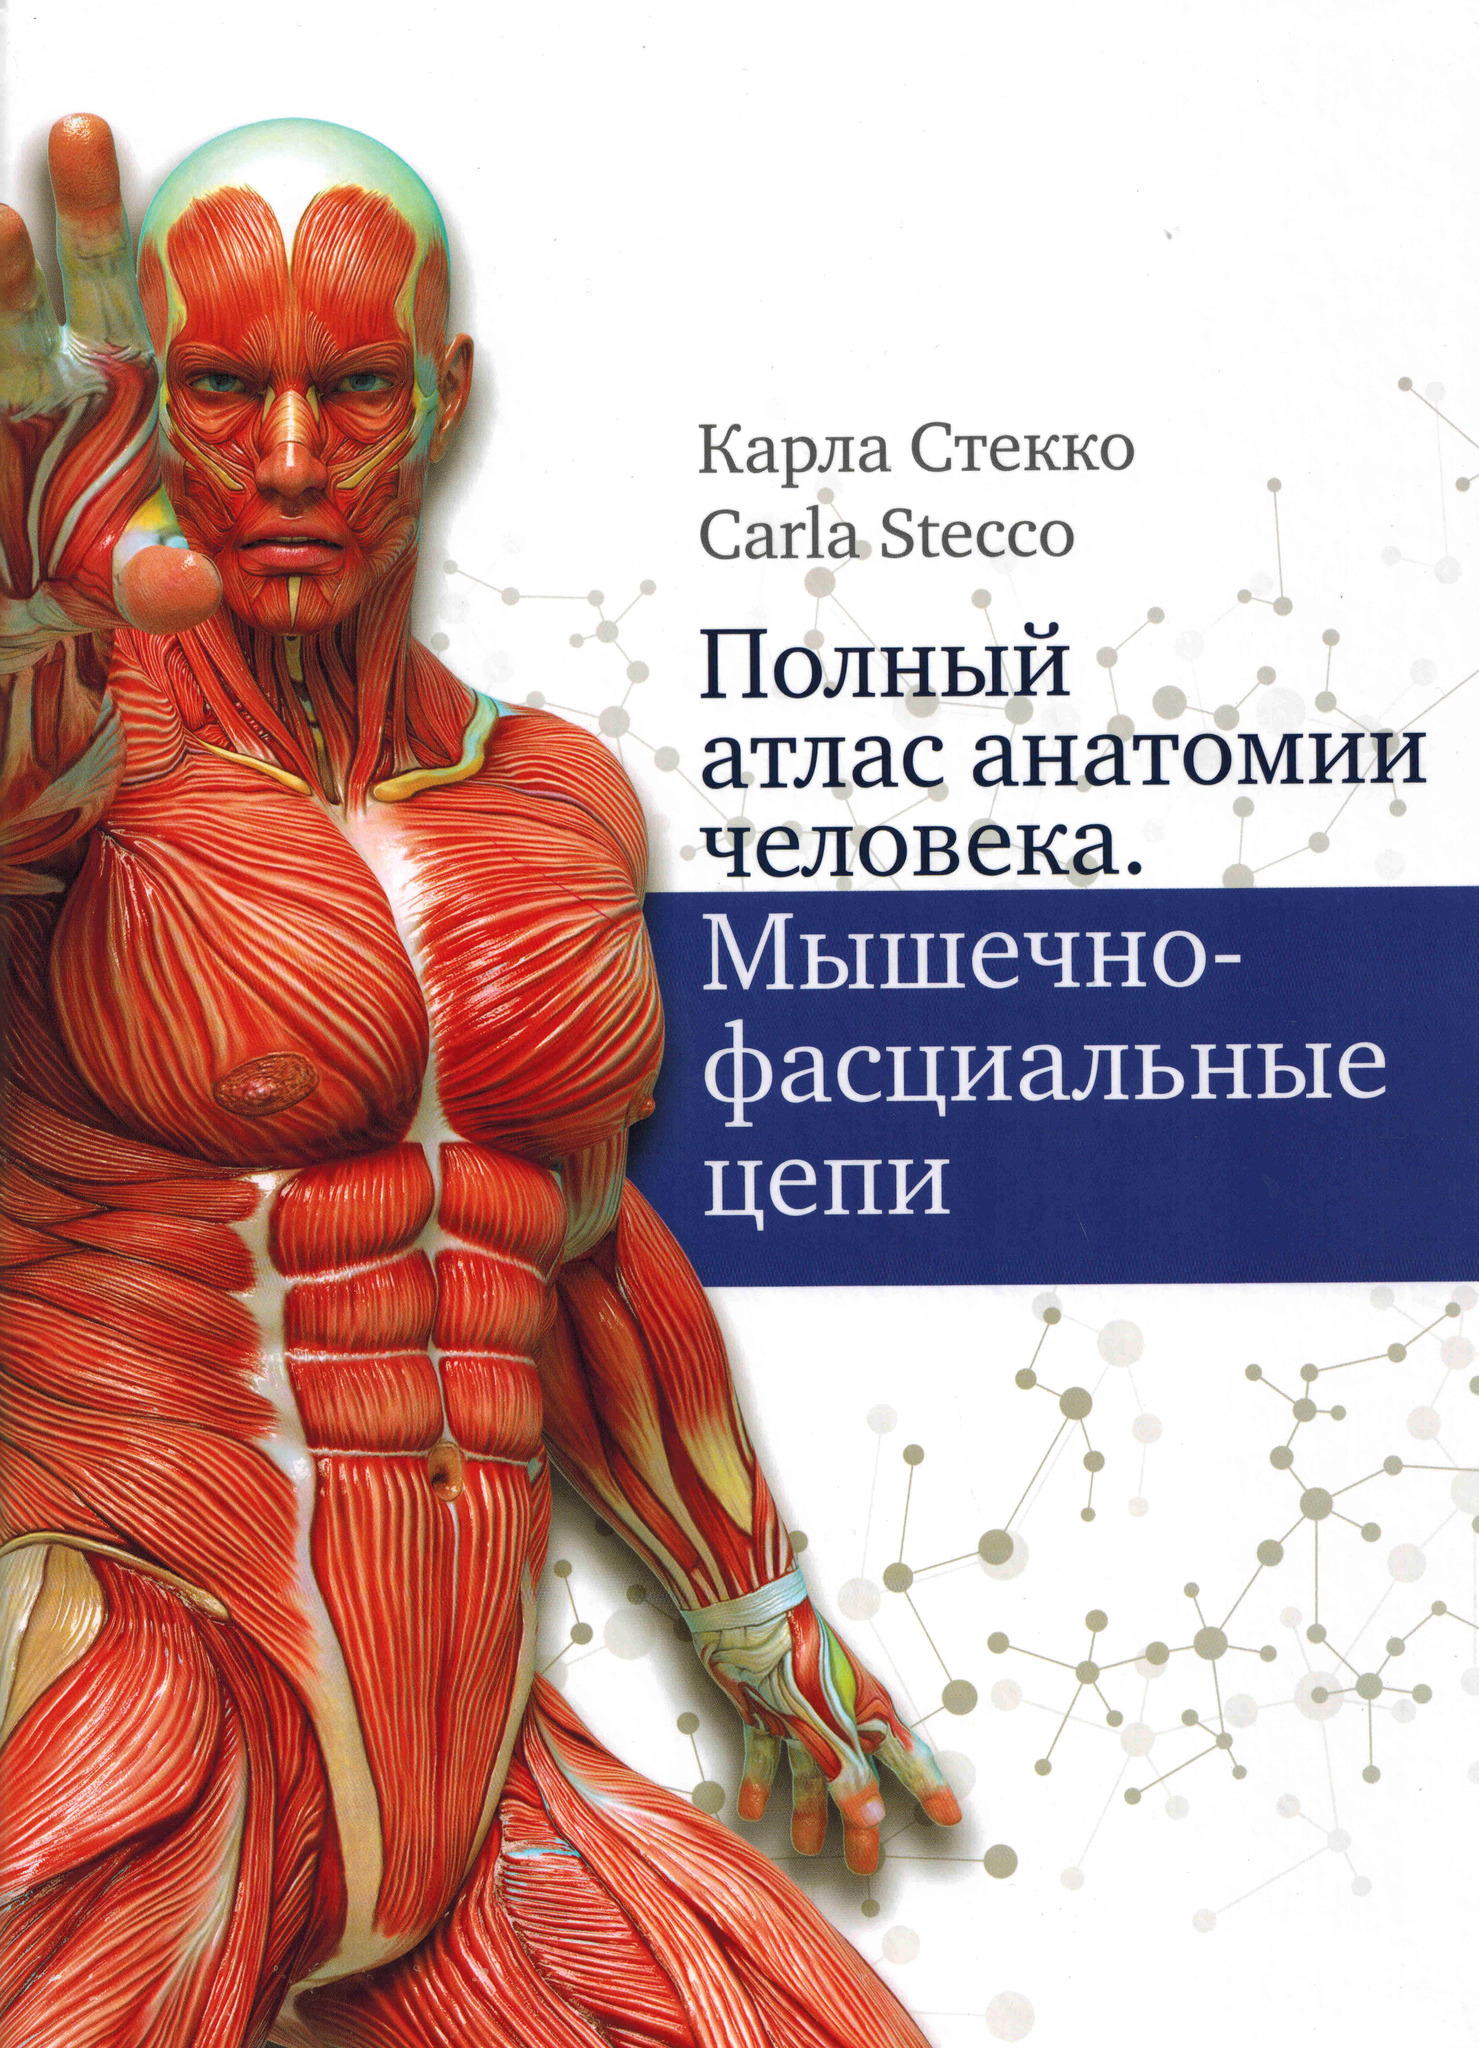 Новинки Полный атлас анатомии человека. Мышечно-фасциальные цепи polnii_atlas.jpg